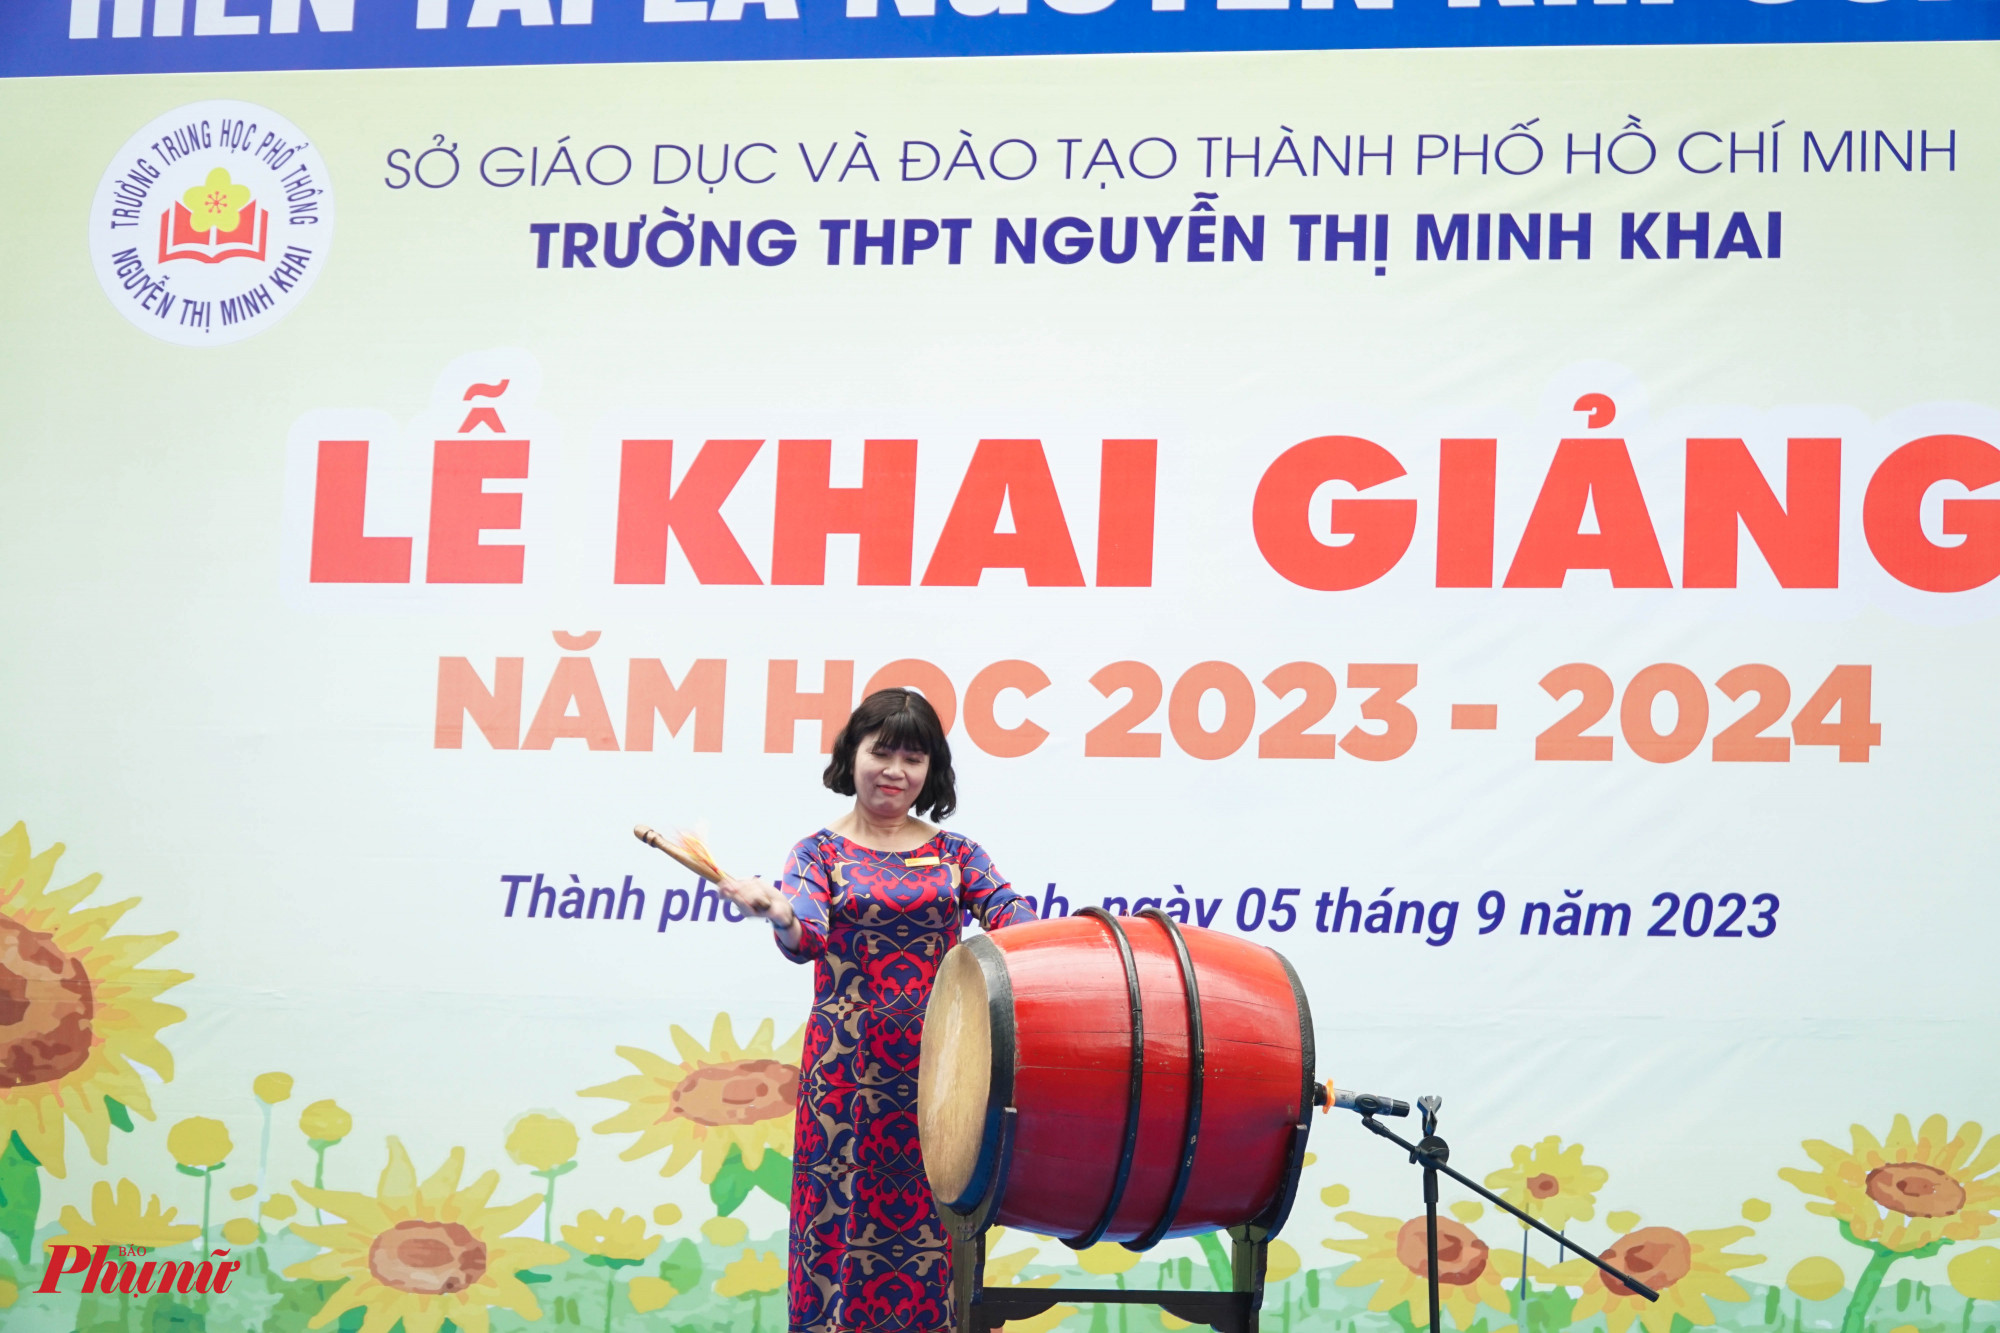 Bà Nguyễn Thị Hồng Chương, Hiệu trưởng Trường THPT Nguyễn Thị Minh Khai